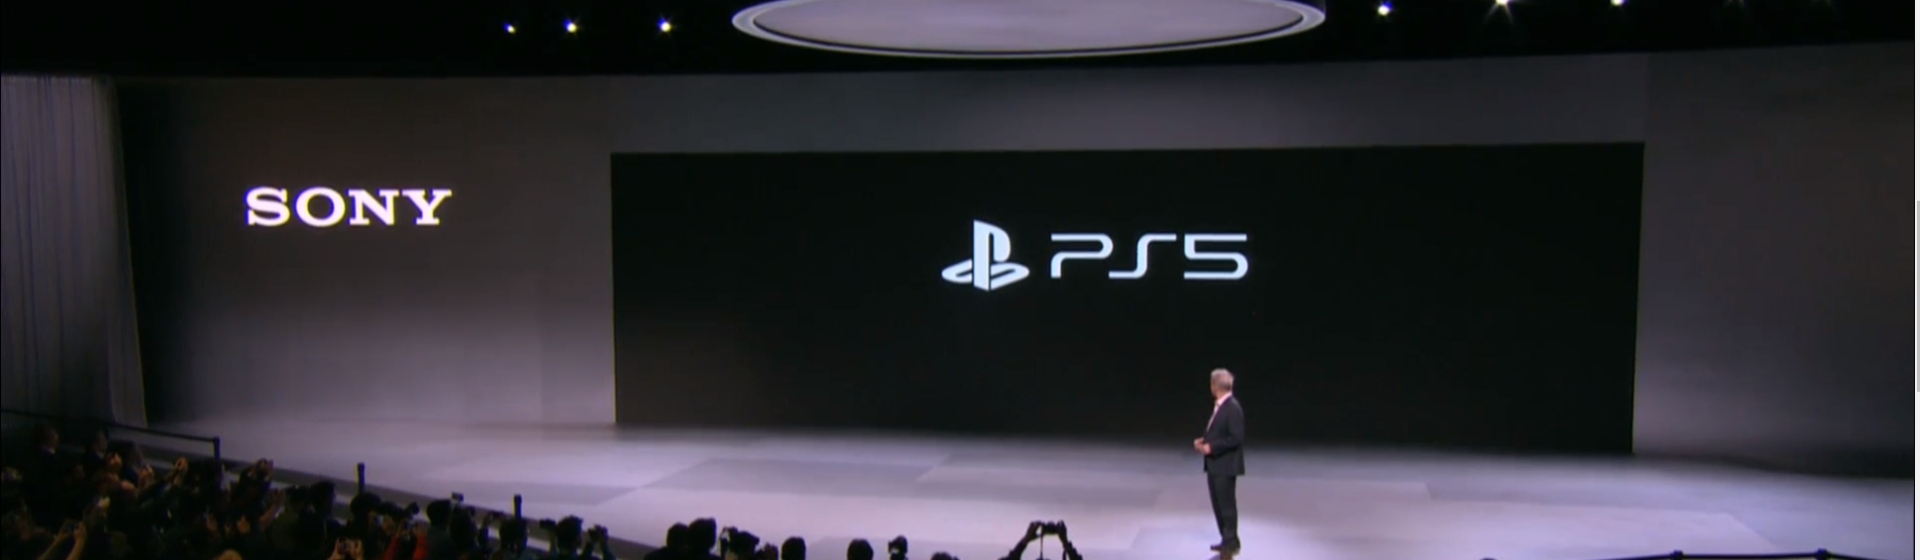 [CES 2020] Sony công bố logo PlayStation 5 cùng nhiều thông tin thú vị